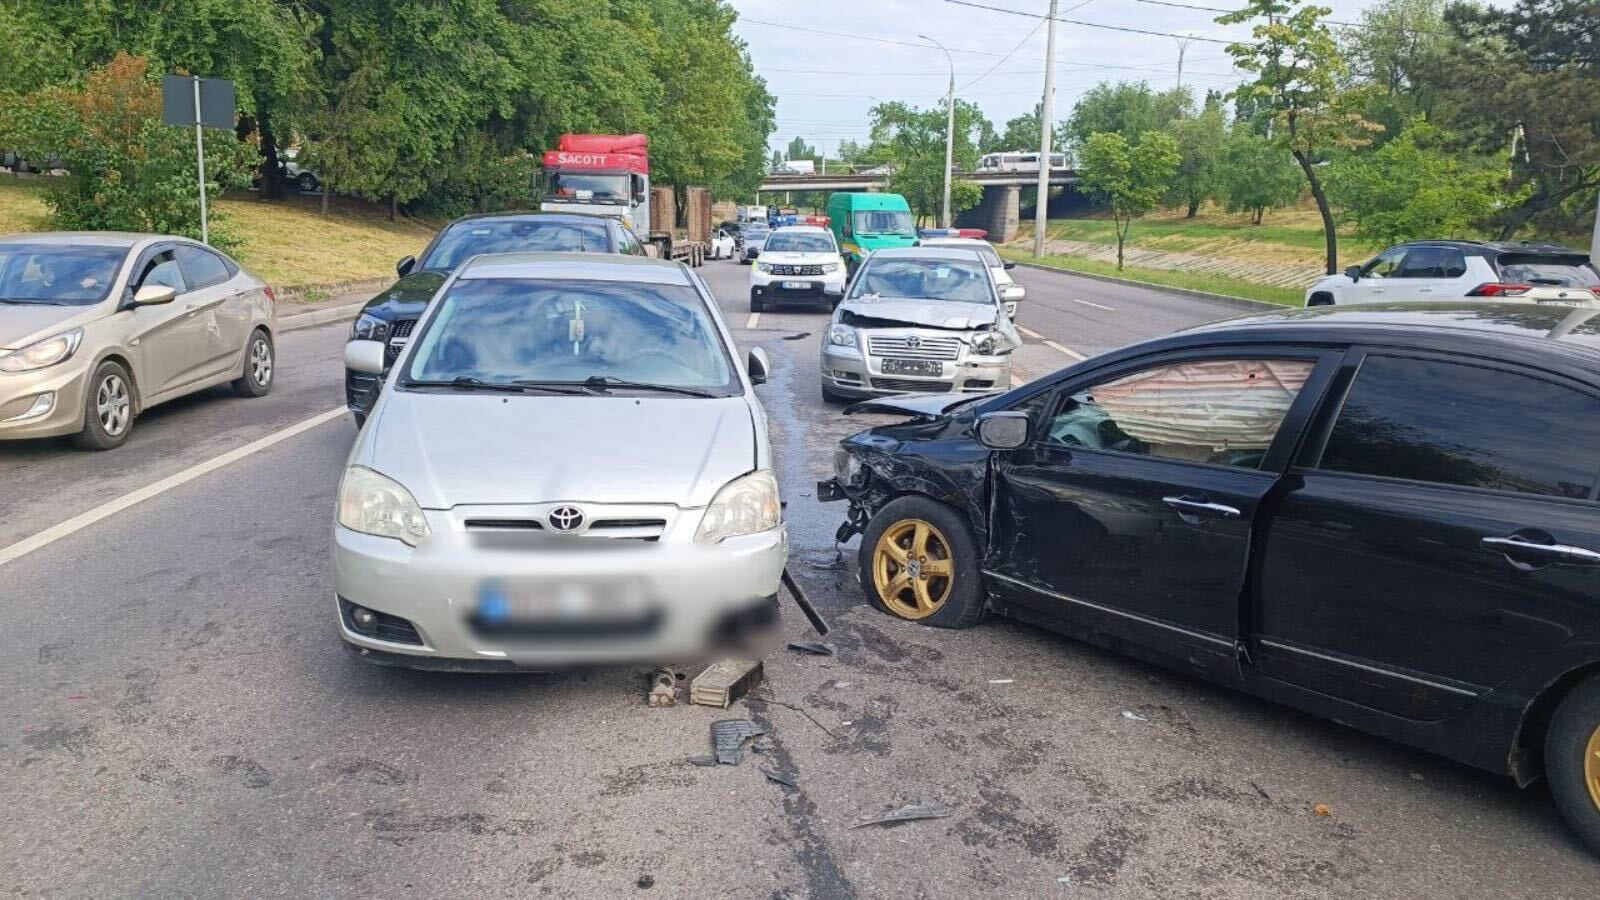 (ФОТО) Авария в Кишиневе. Столкнулись шесть автомобилей